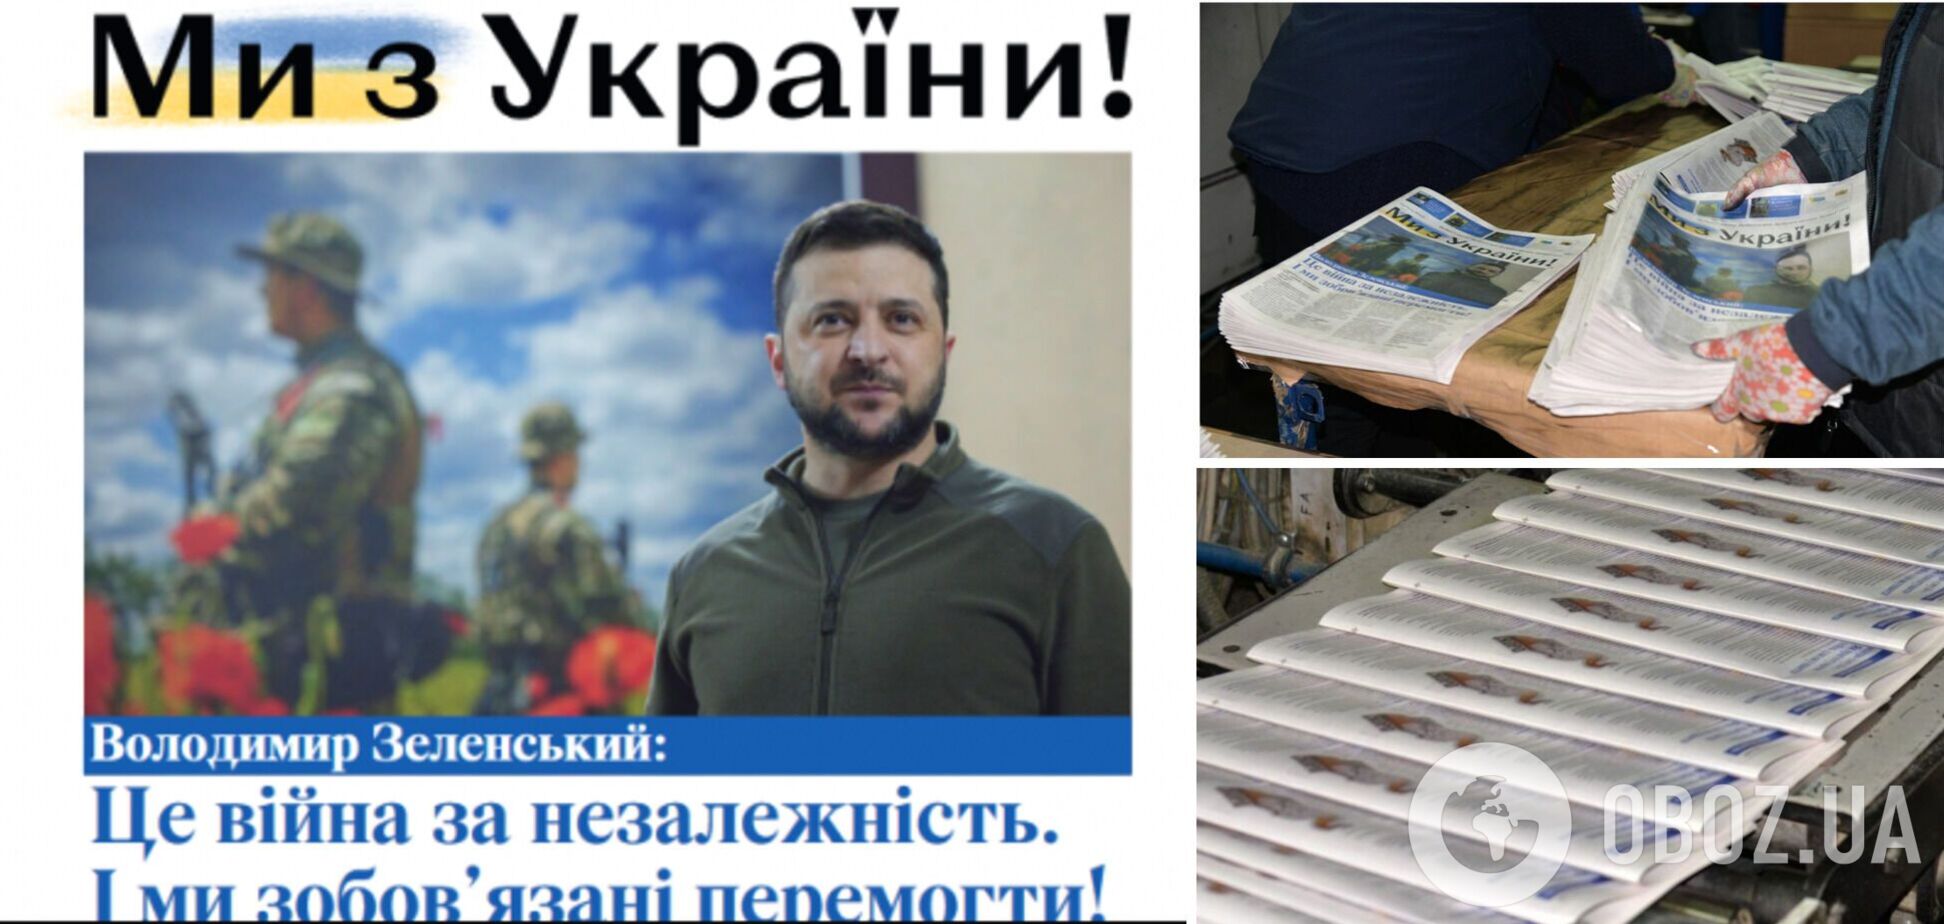 'Ми з України!': мир увидела народная газета, которую подготовили украинский и литовский союз журналистов